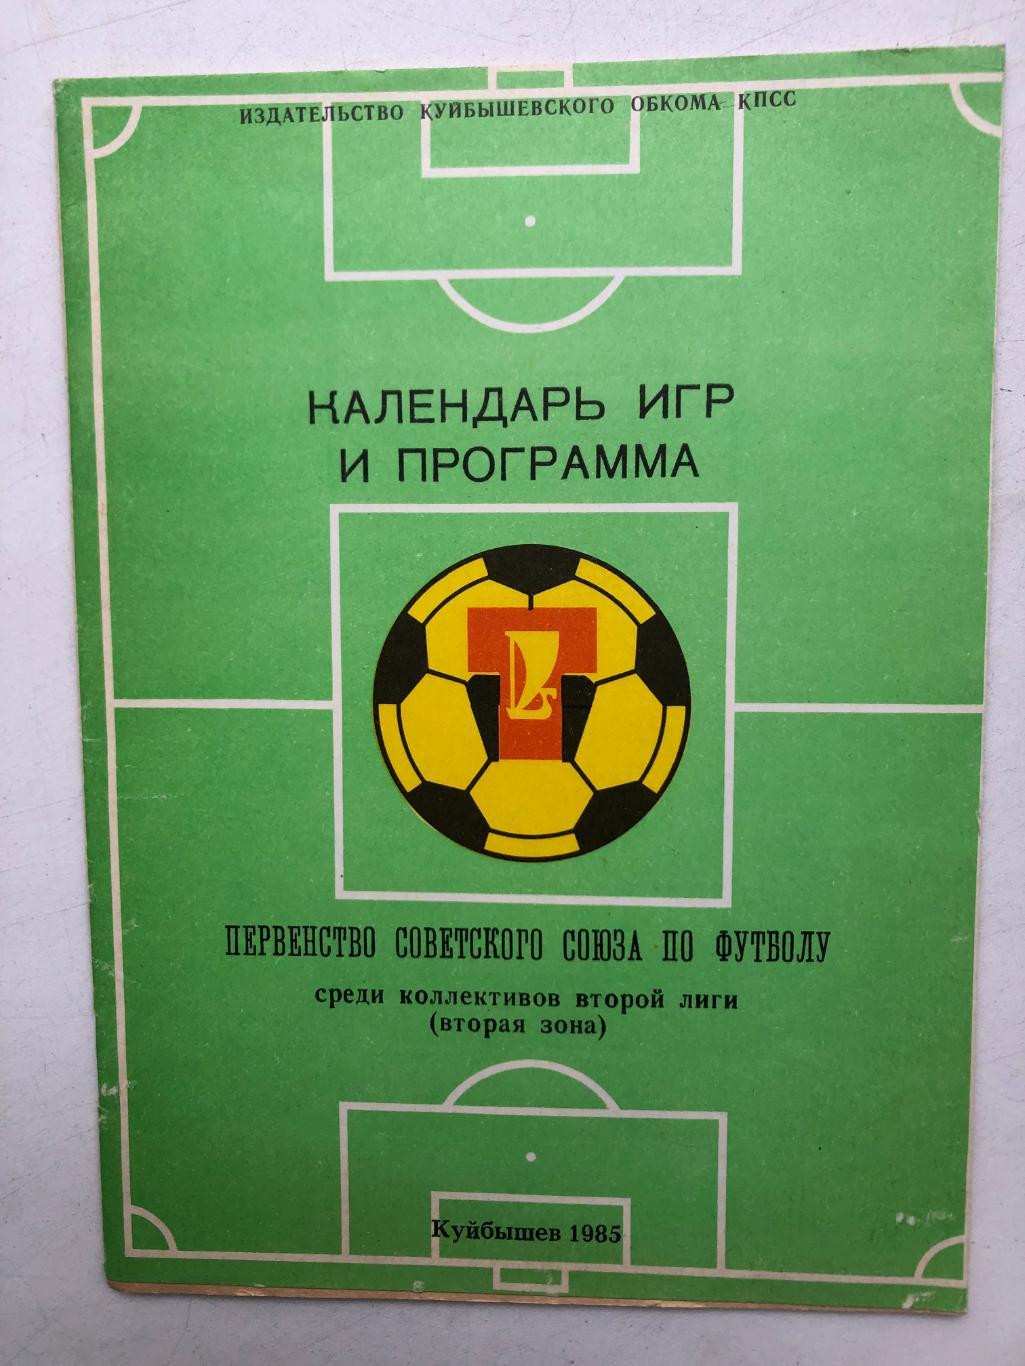 Календарь игр Куйбышев 1985